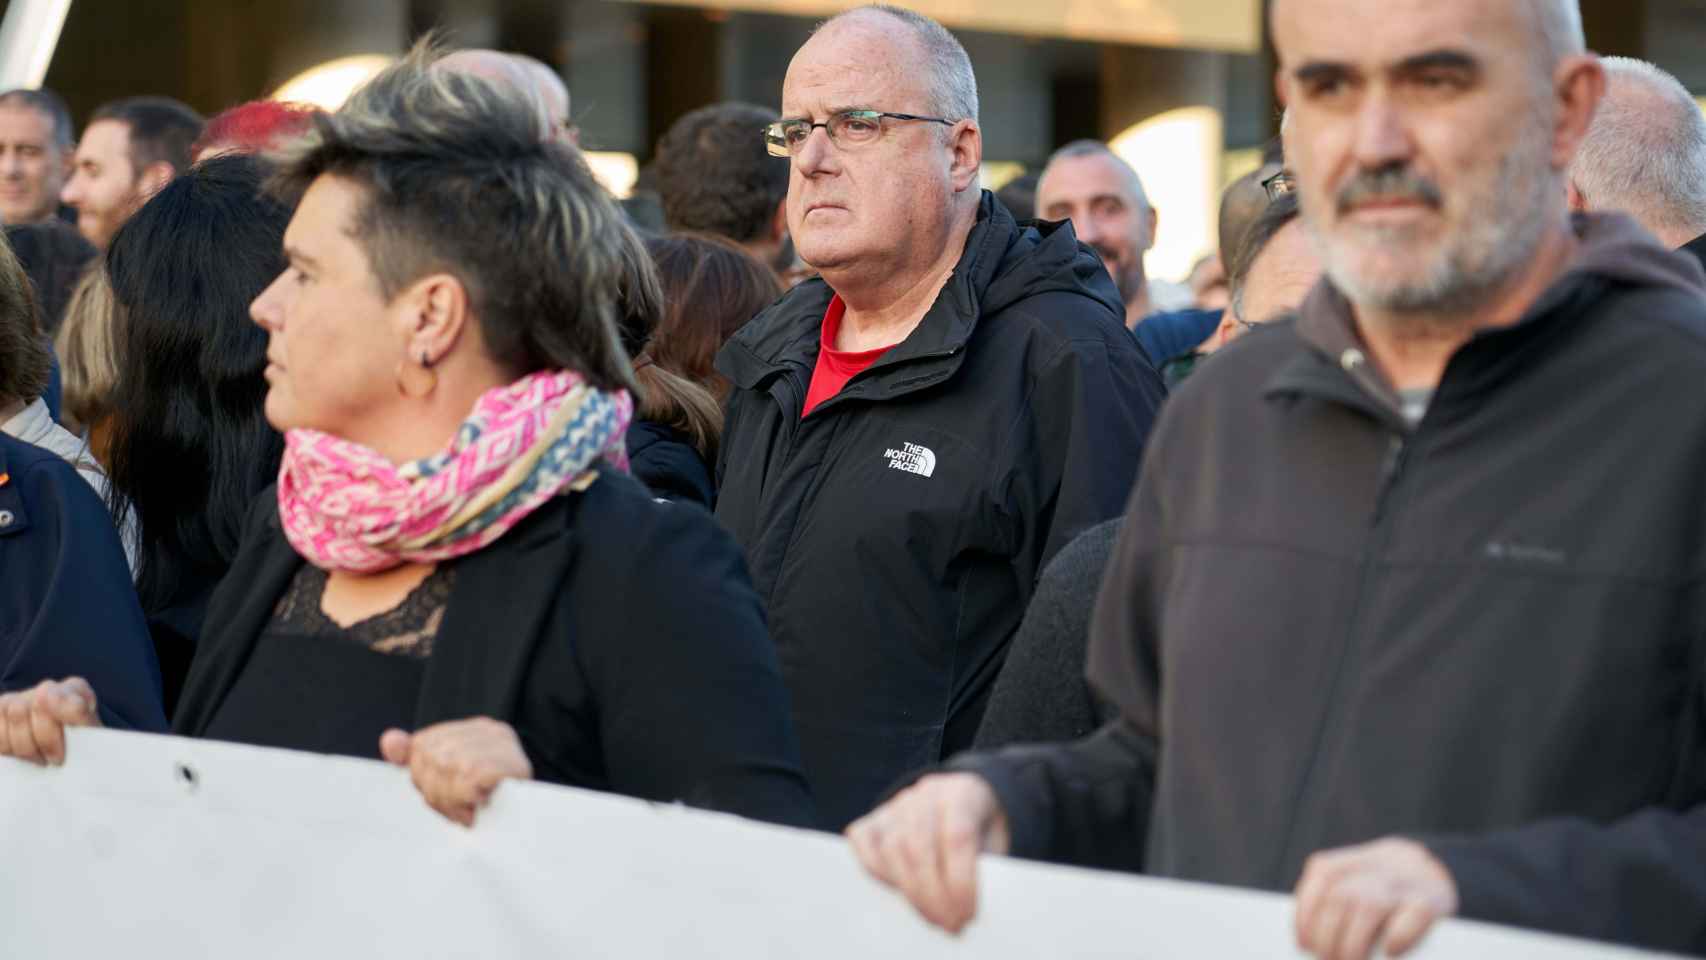 El portavoz del EAJ-PNV en el Parlamento Vasco, Joseba Egibar (c), durante una manifestación “ante la injerencia de los tribunales”, el pasado 4 de noviembre en Bilbao / Carlos González - Europa Press